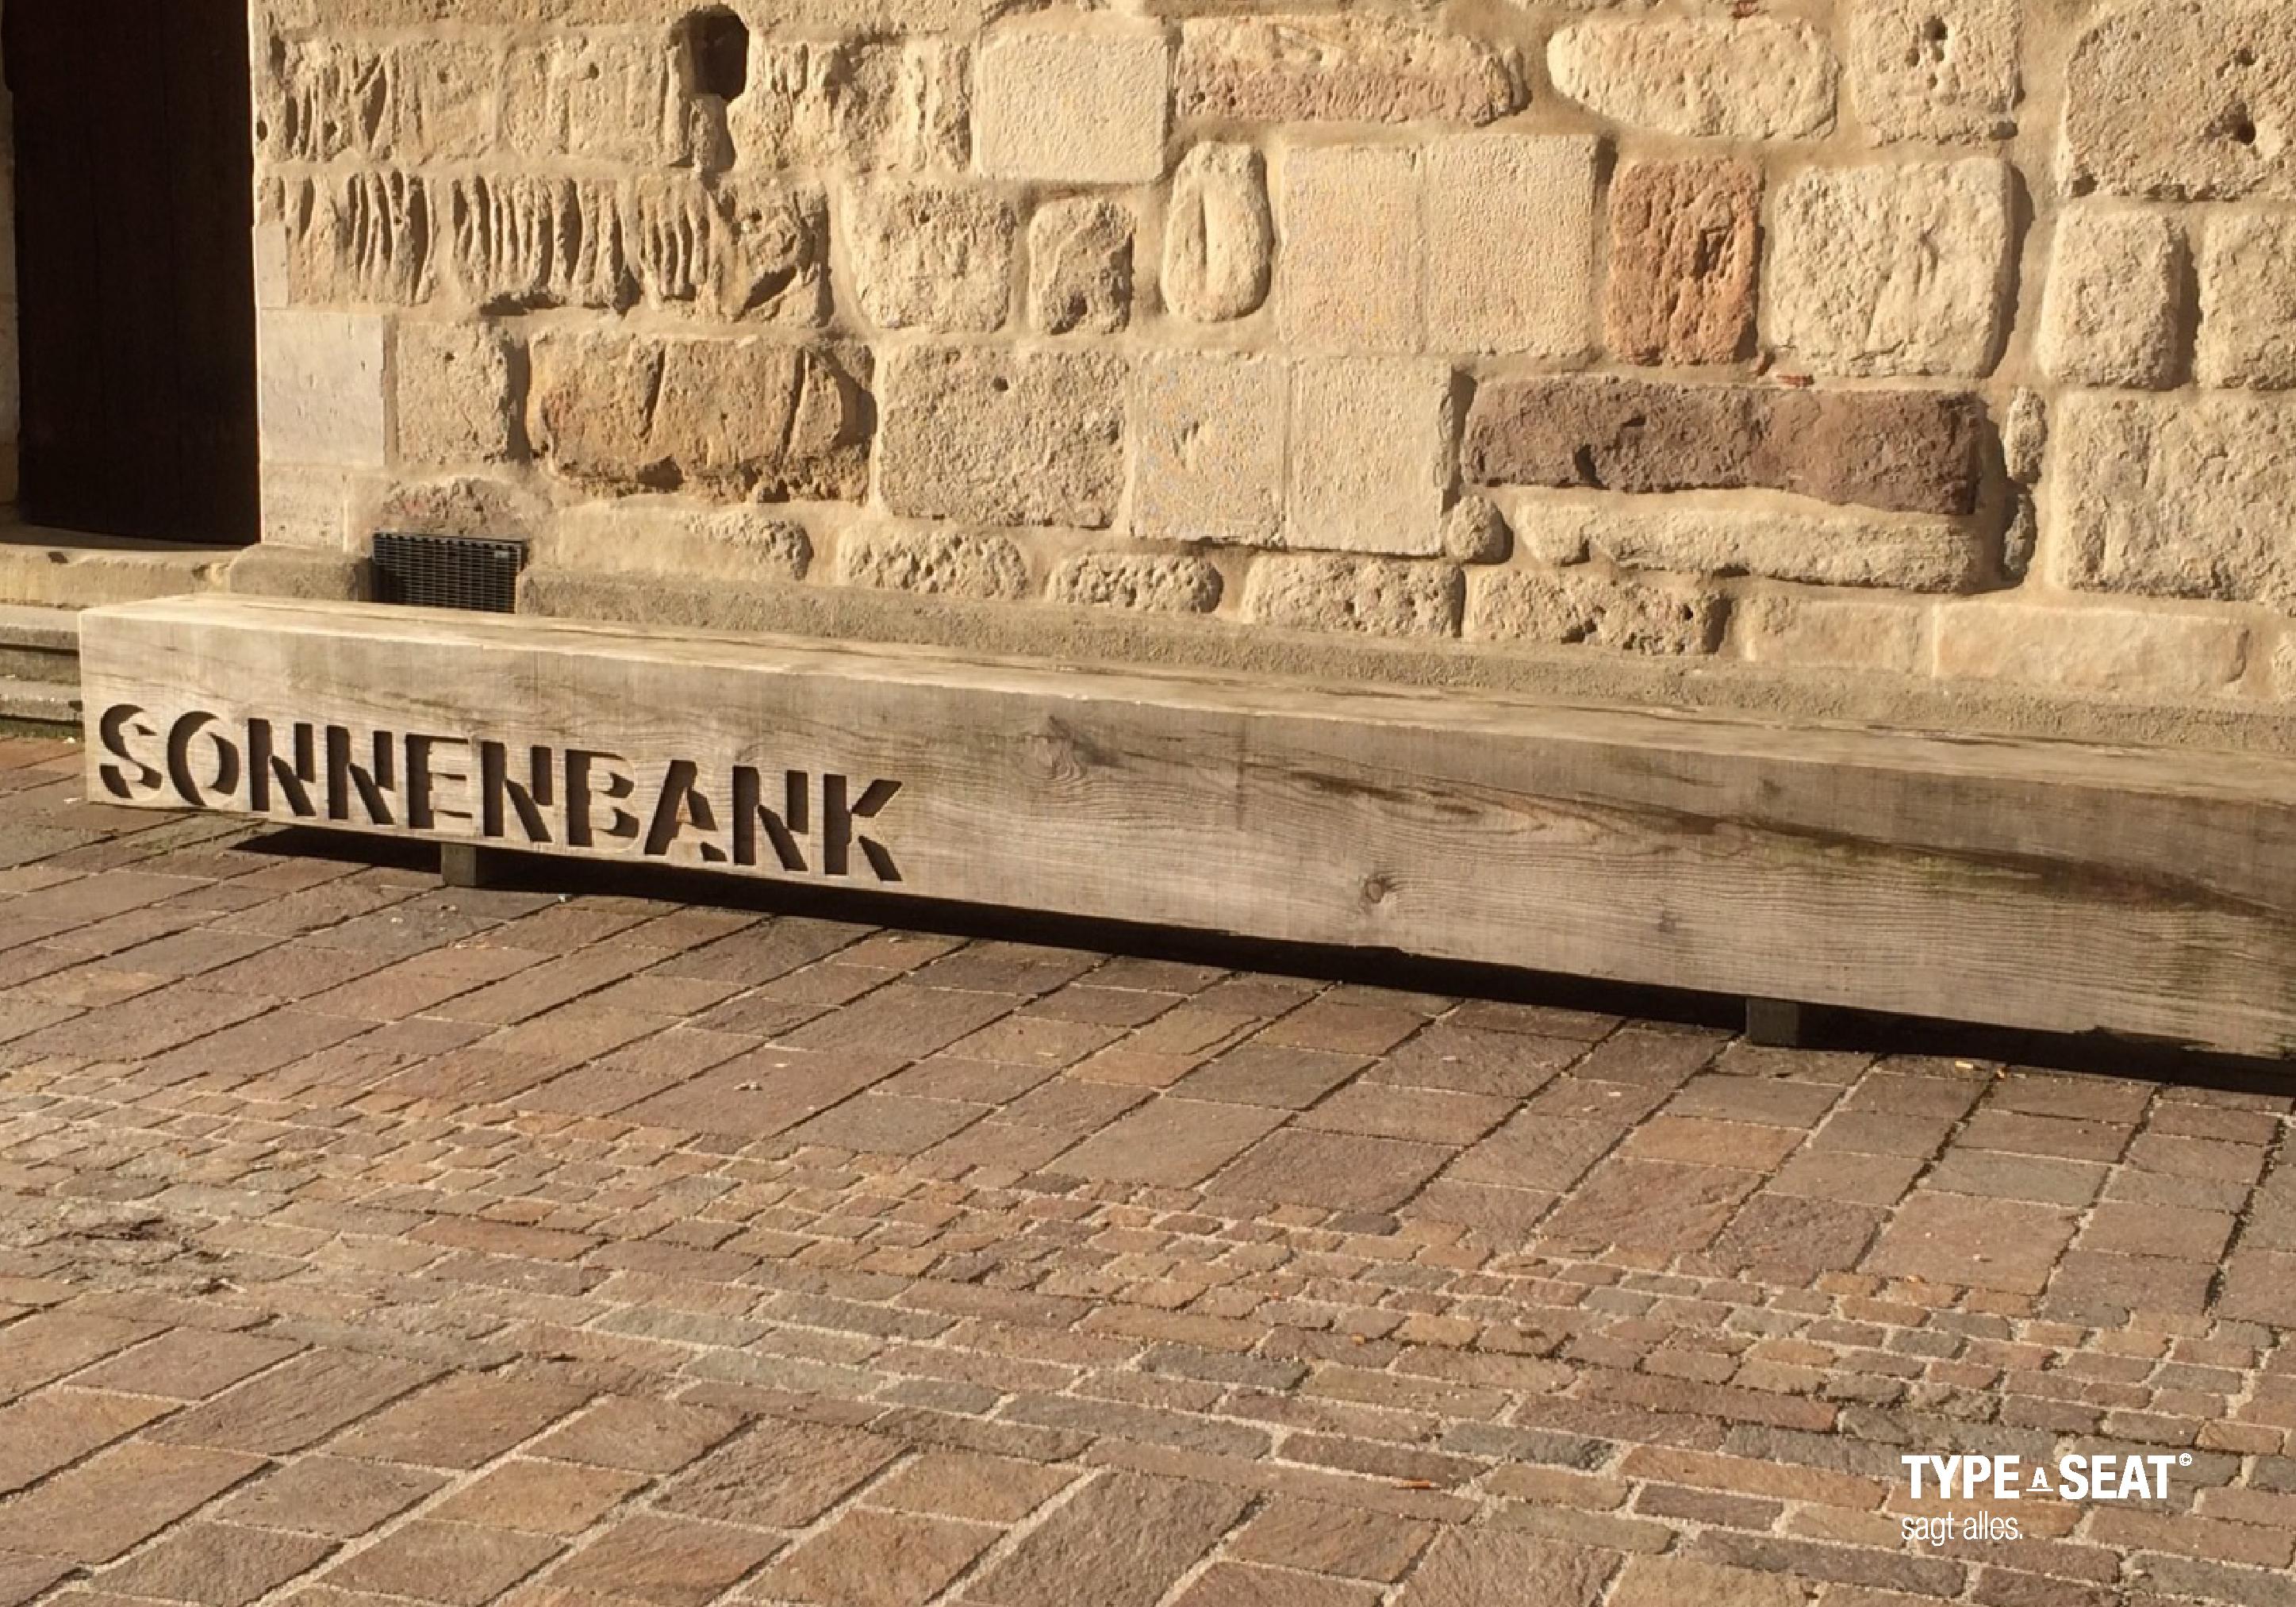 Die Stadtbank von TYPE A SEAT #holzbank #sitzbank #gartenbank ©TYPE A SEAT / Tillmann Gatter